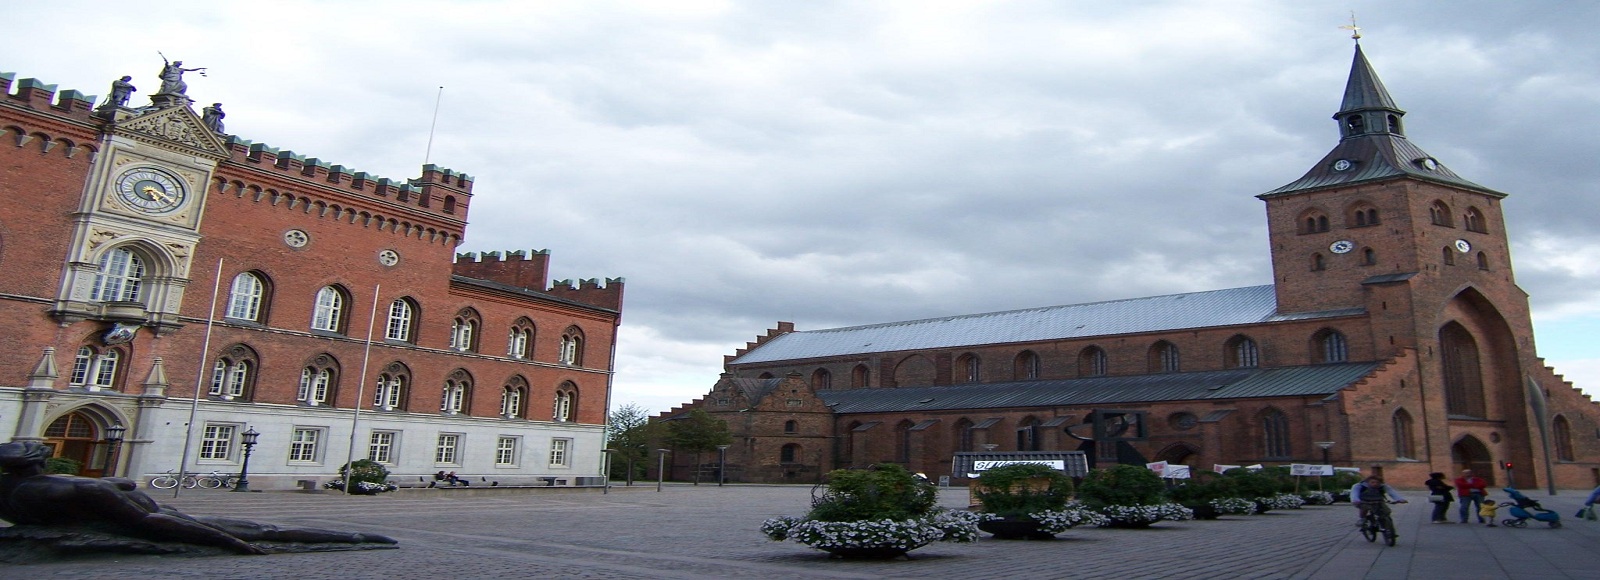 Ofertas de Traslados en Odense. Traslados económicos en Odense 